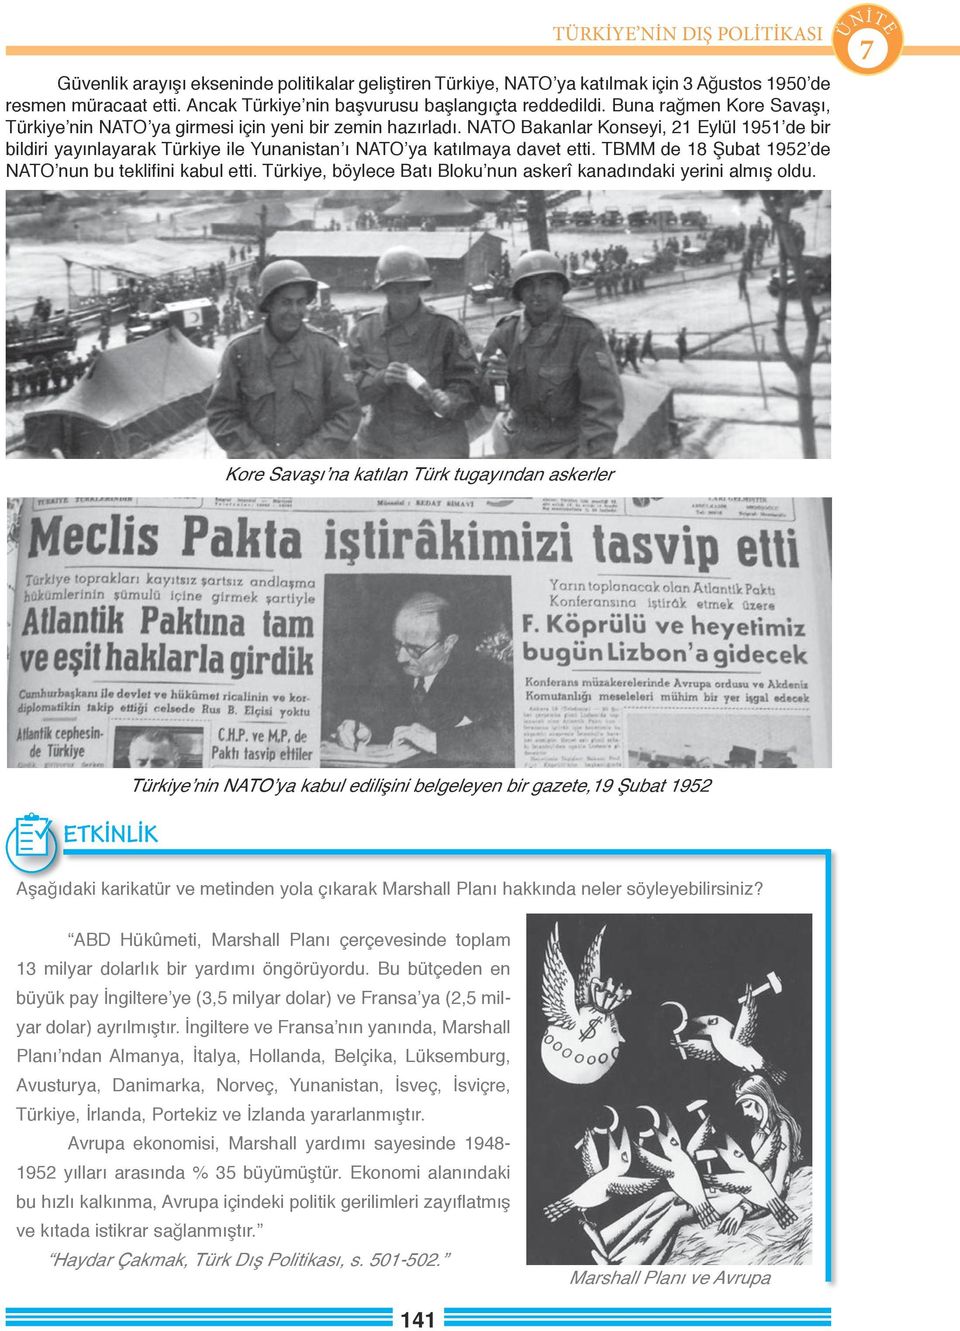 NATO Bakanlar Konseyi, 21 Eylül 1951 de bir bildiri yayınlayarak Türkiye ile Yunanistan ı NATO ya katılmaya davet etti. TBMM de 18 Şubat 1952 de NATO nun bu teklifini kabul etti.